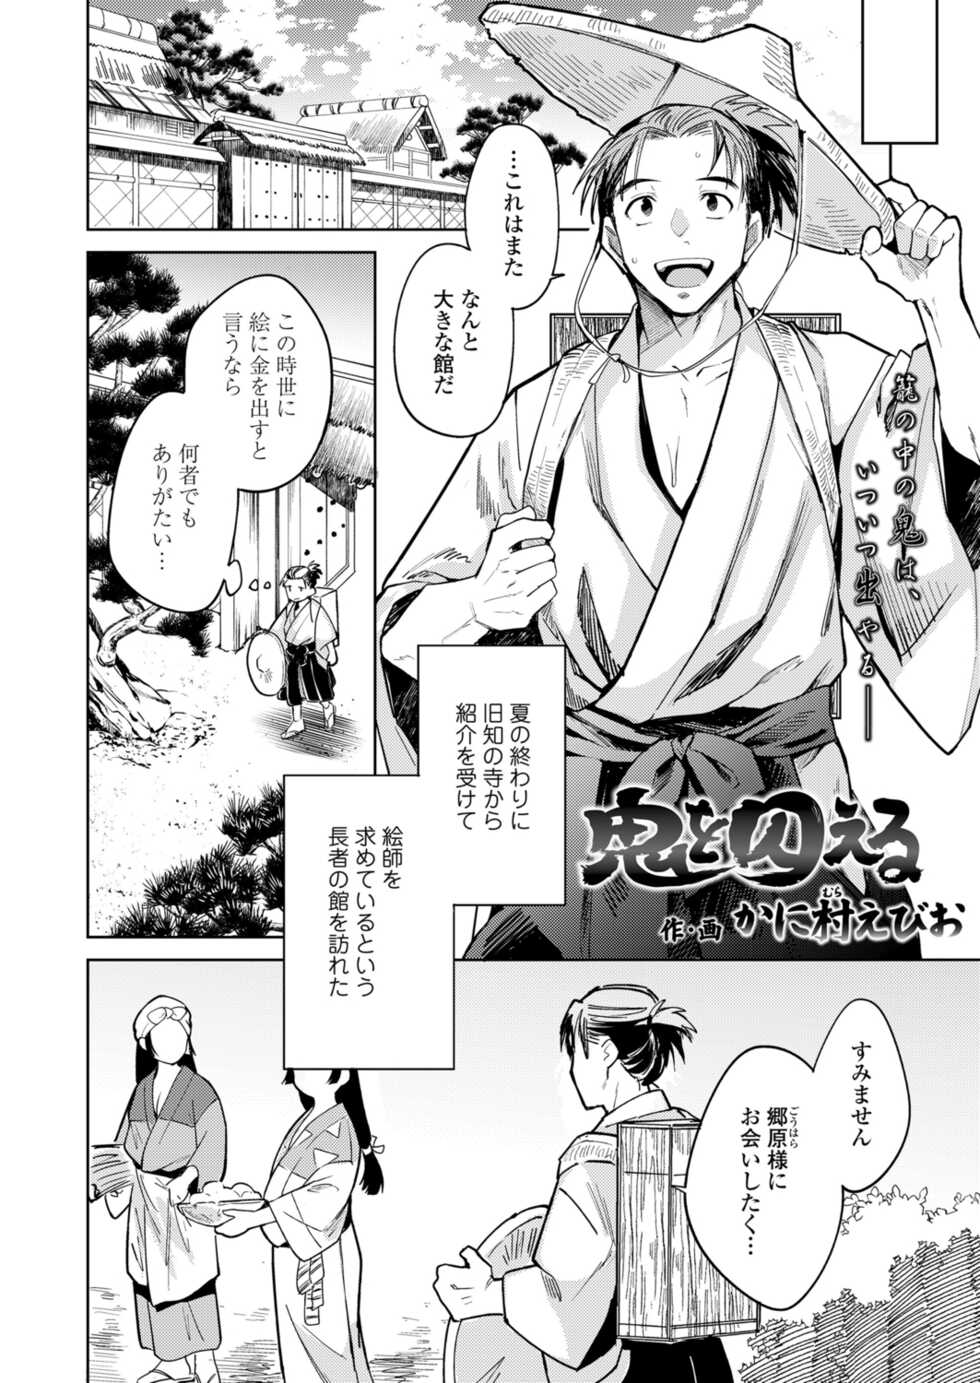 Towako 12 [Digital] - Page 4